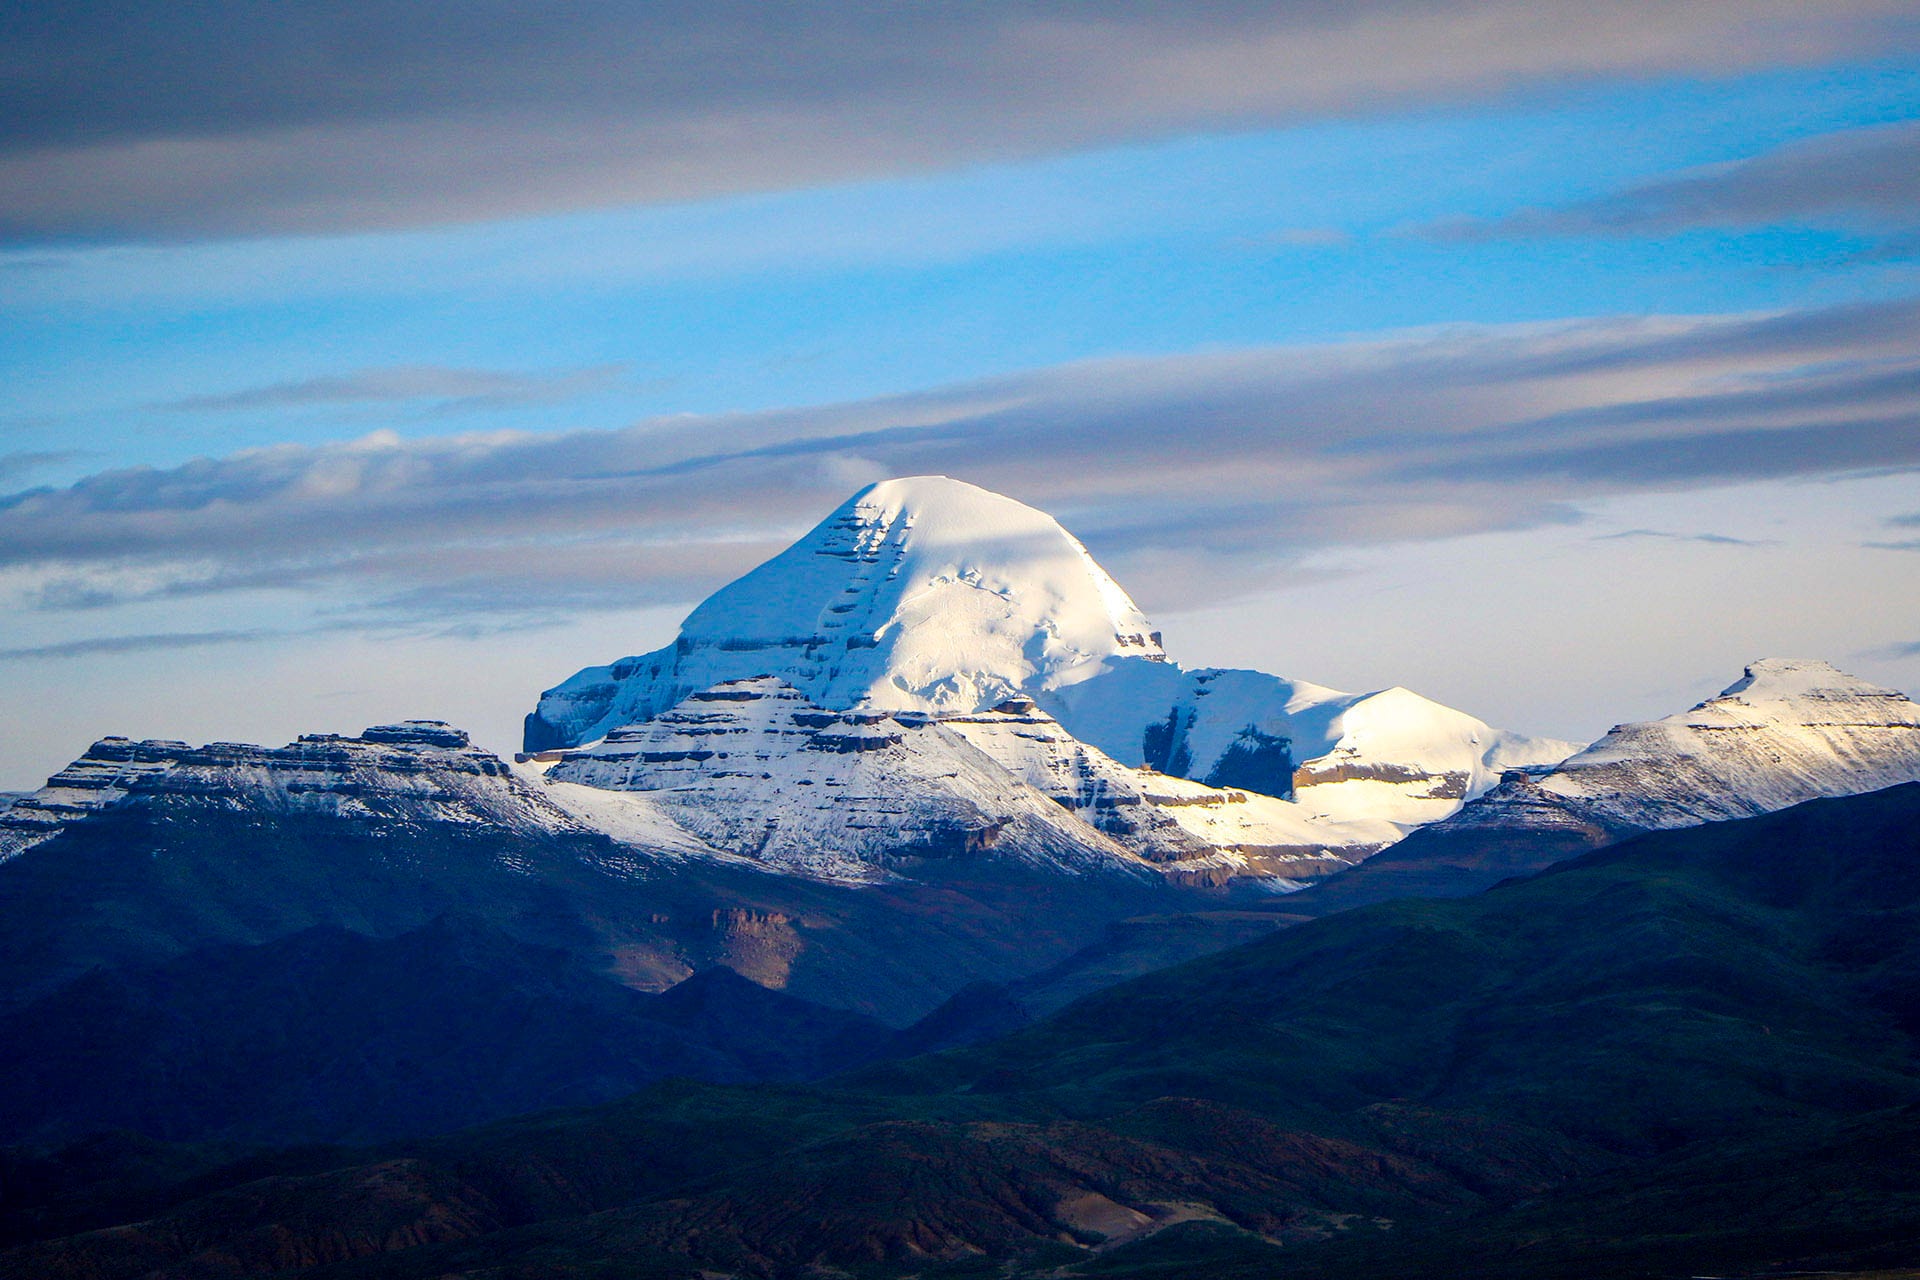 Kailash mountain